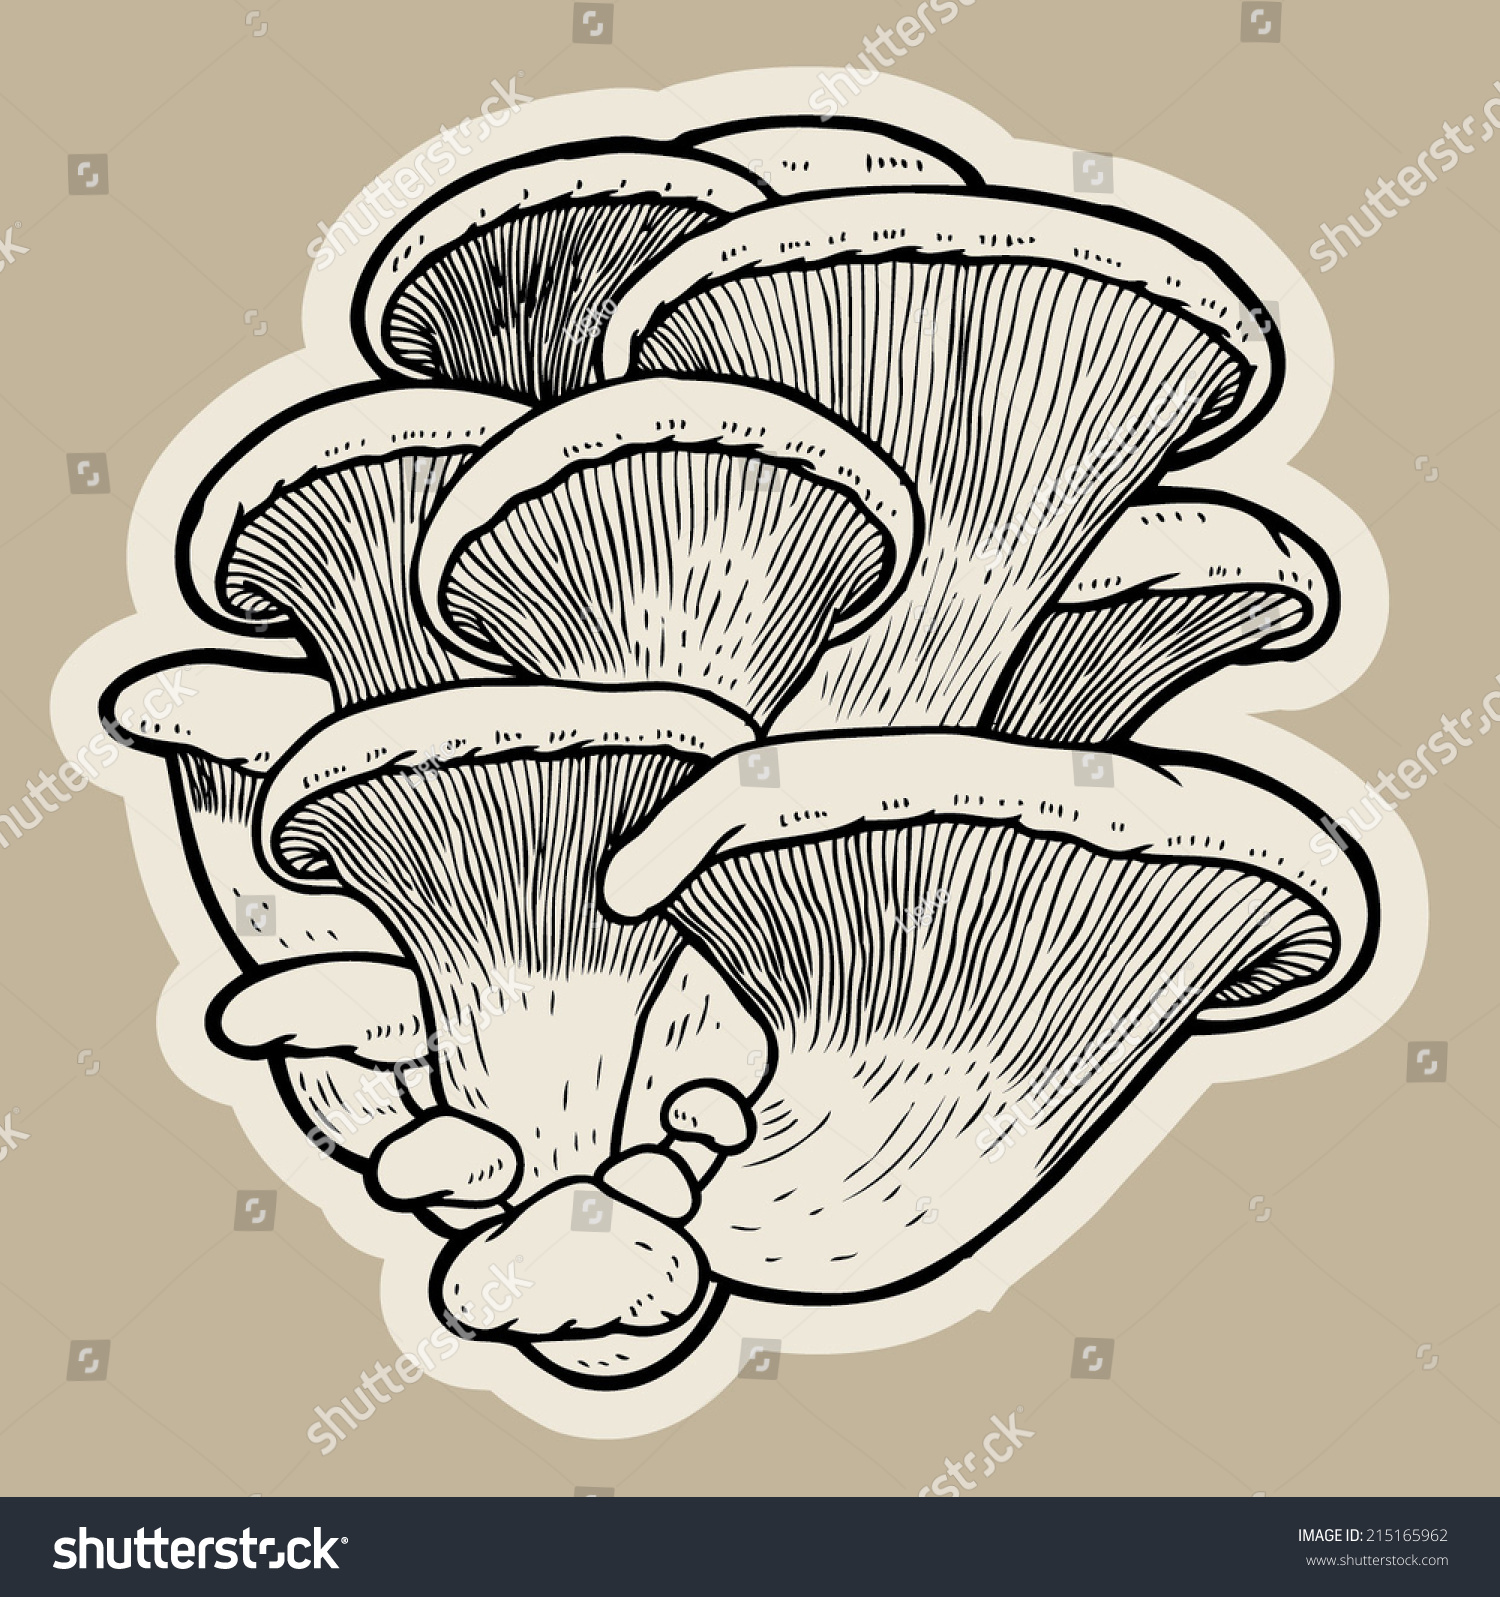 oyster mushroom clip art - photo #17